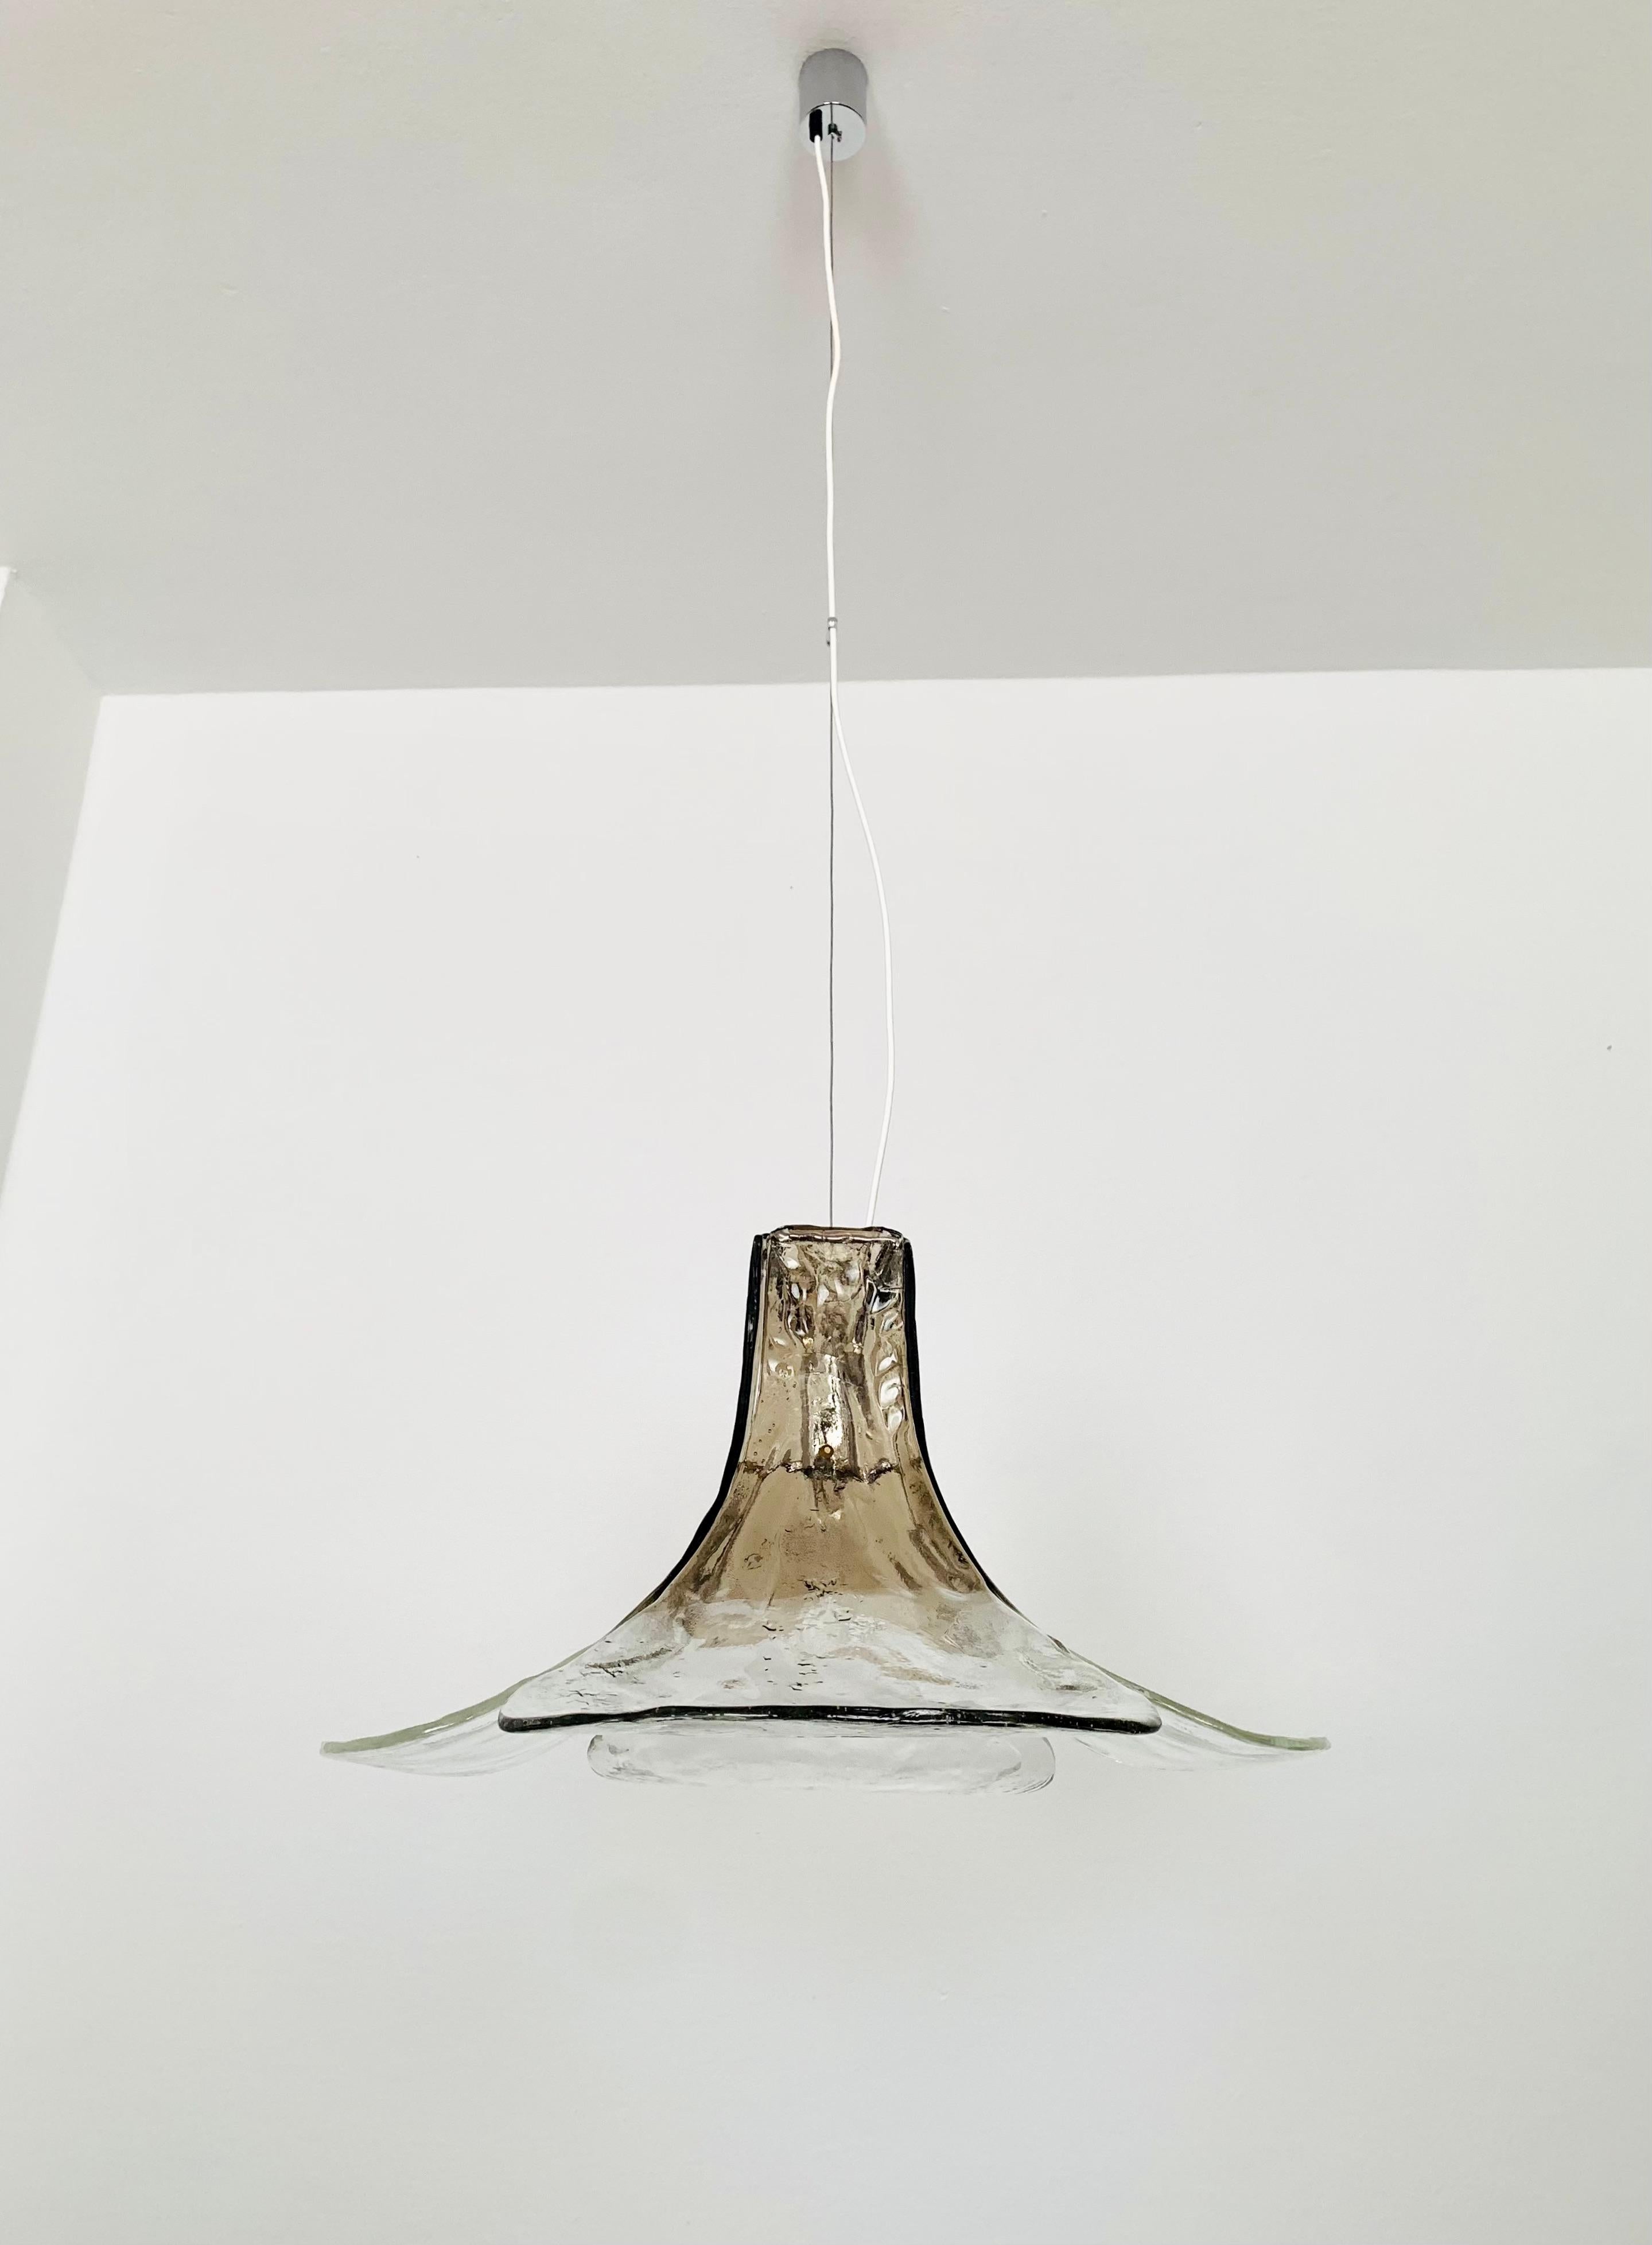 Sehr schöne Deckenlampe aus Murano-Glas aus den 1960er Jahren.
Die Lampe ist sehr elegant.
Die Struktur der Gläser erzeugt ein sehr funkelndes Licht.
Fantastisches Design und eine Bereicherung für jedes Haus.

Hersteller: Mazzega
Entwurf: Carlo